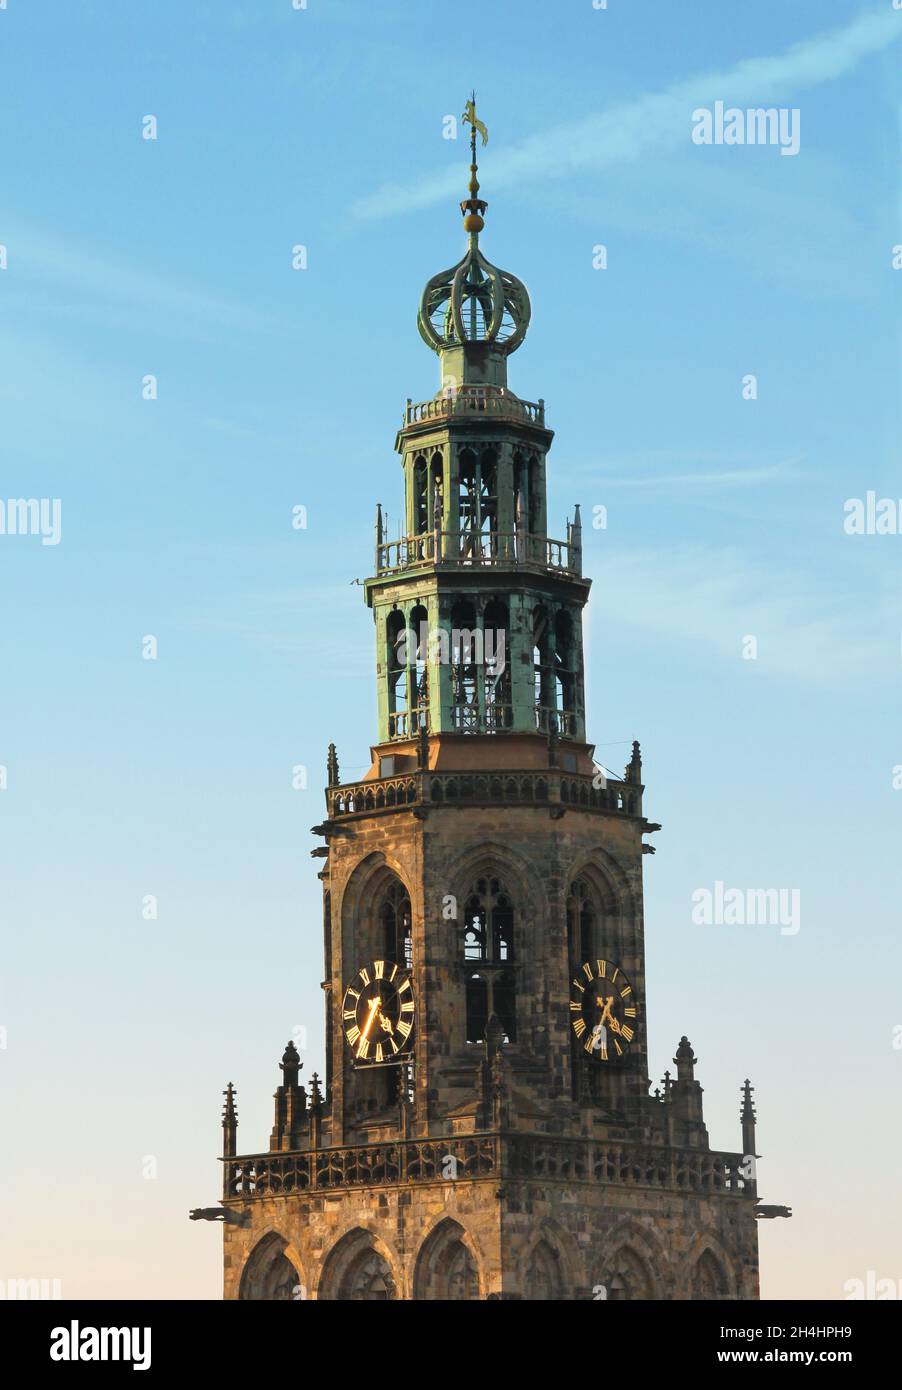 Le sommet de la tour Martini à Groningen, aux pays-Bas.Ciel bleu avec quelques nuages de lumière. Banque D'Images